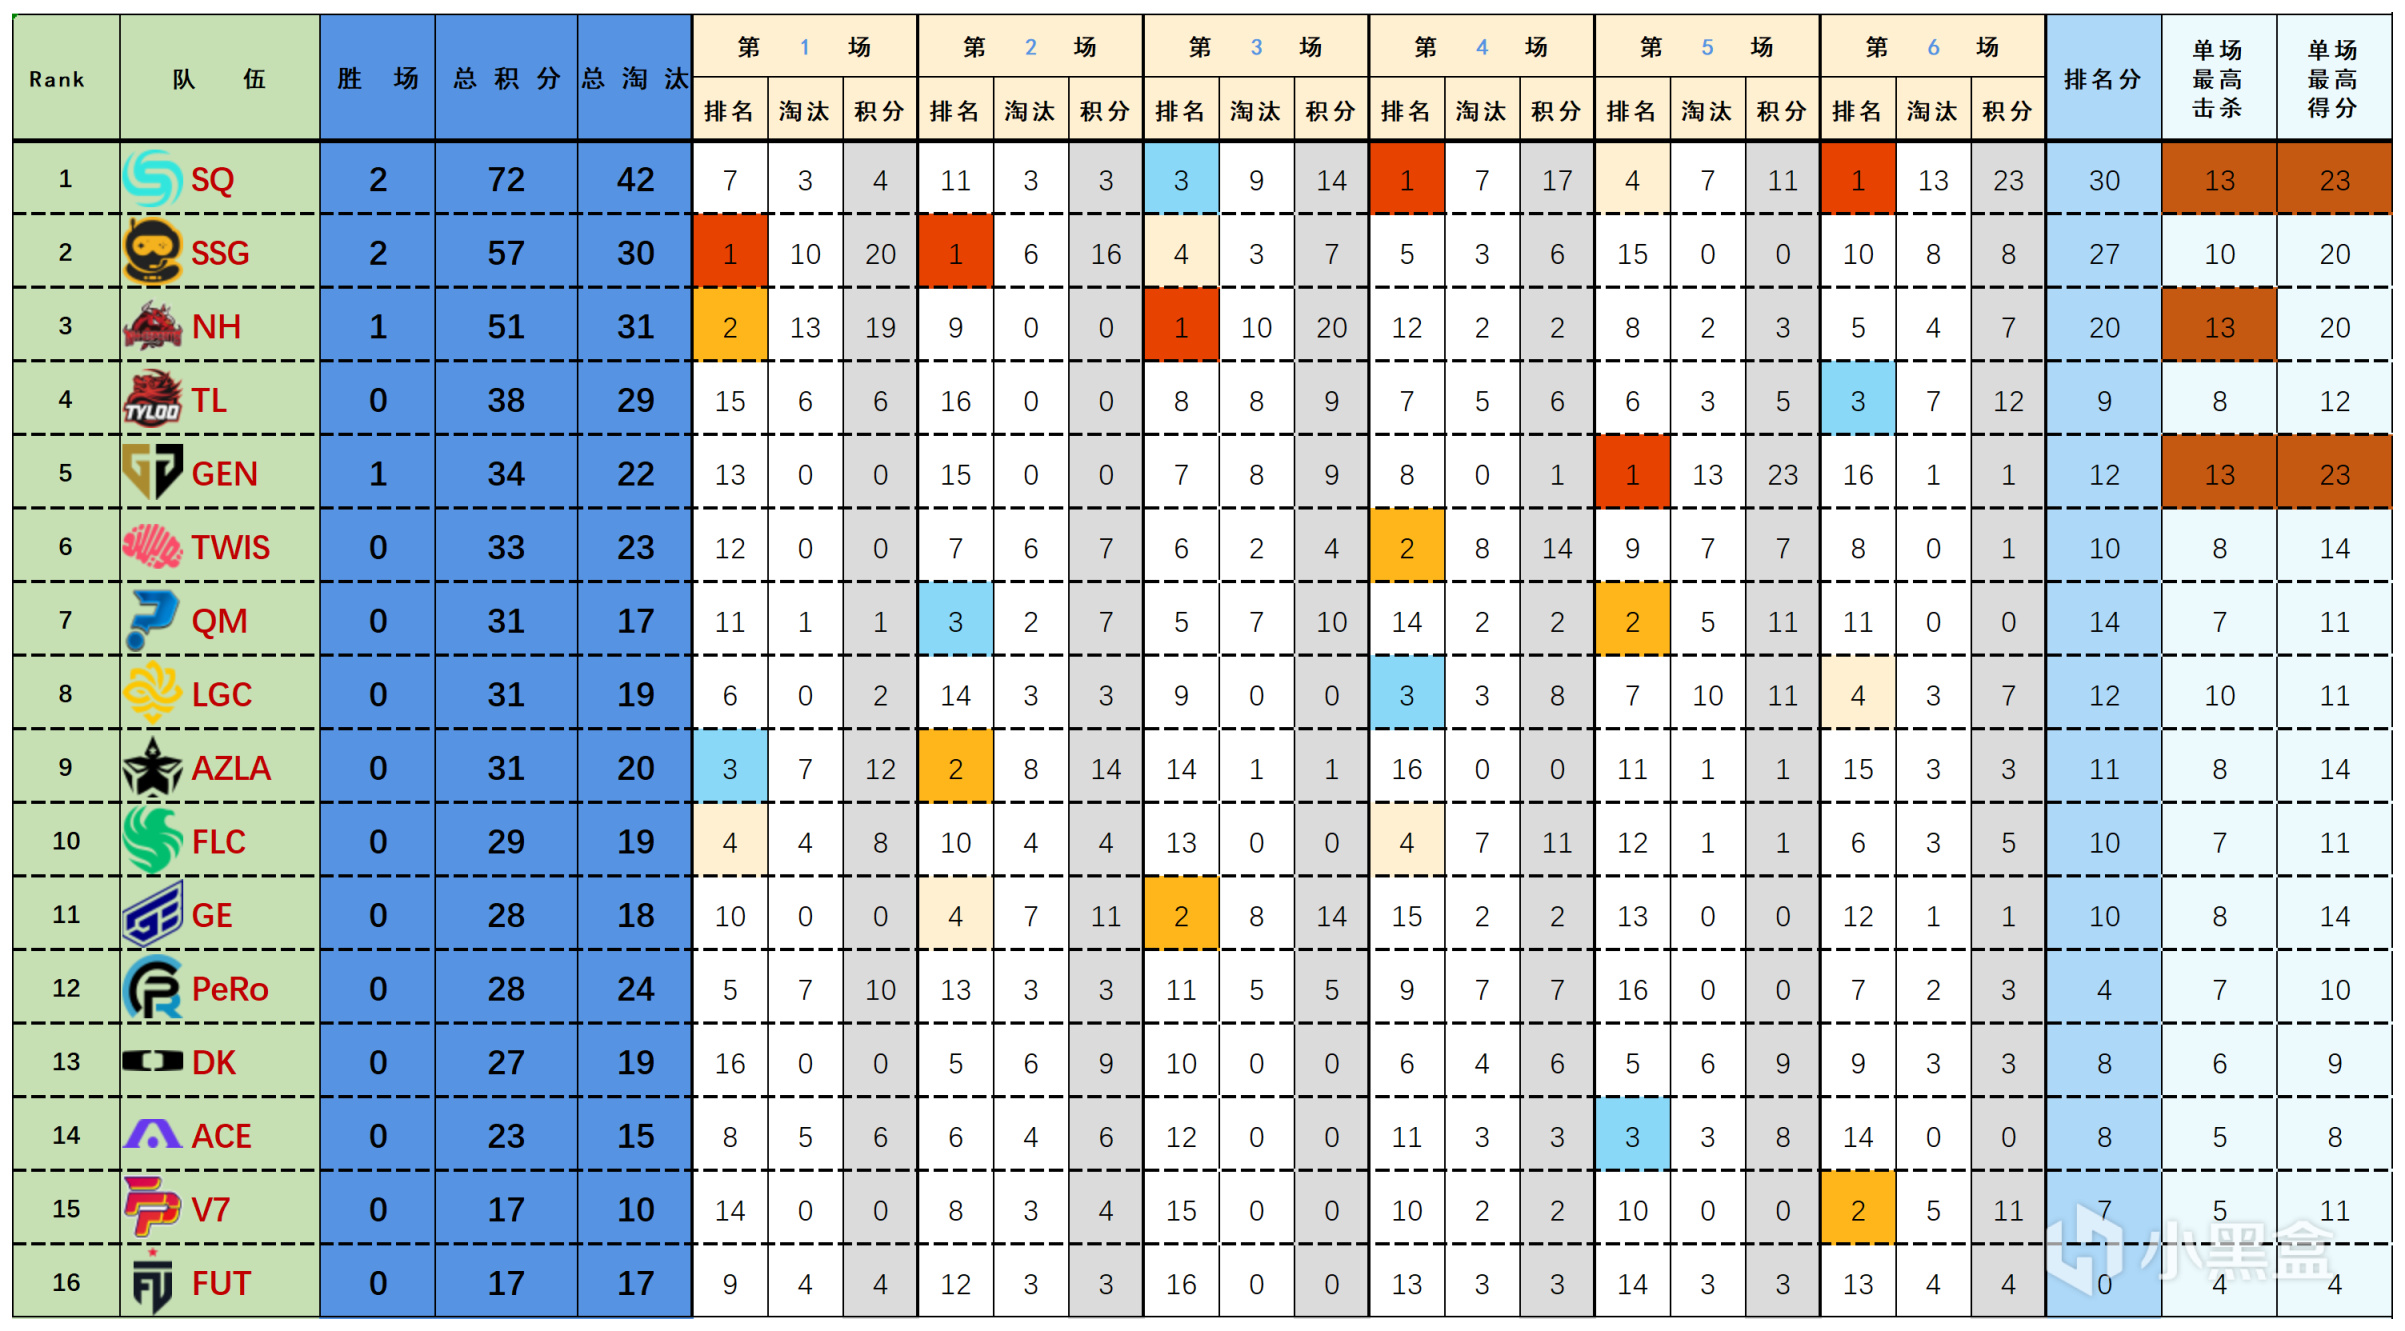 【数据流】23PGC突围赛D1,SQ 72分来到榜首,Kickstart战神19淘汰-第1张